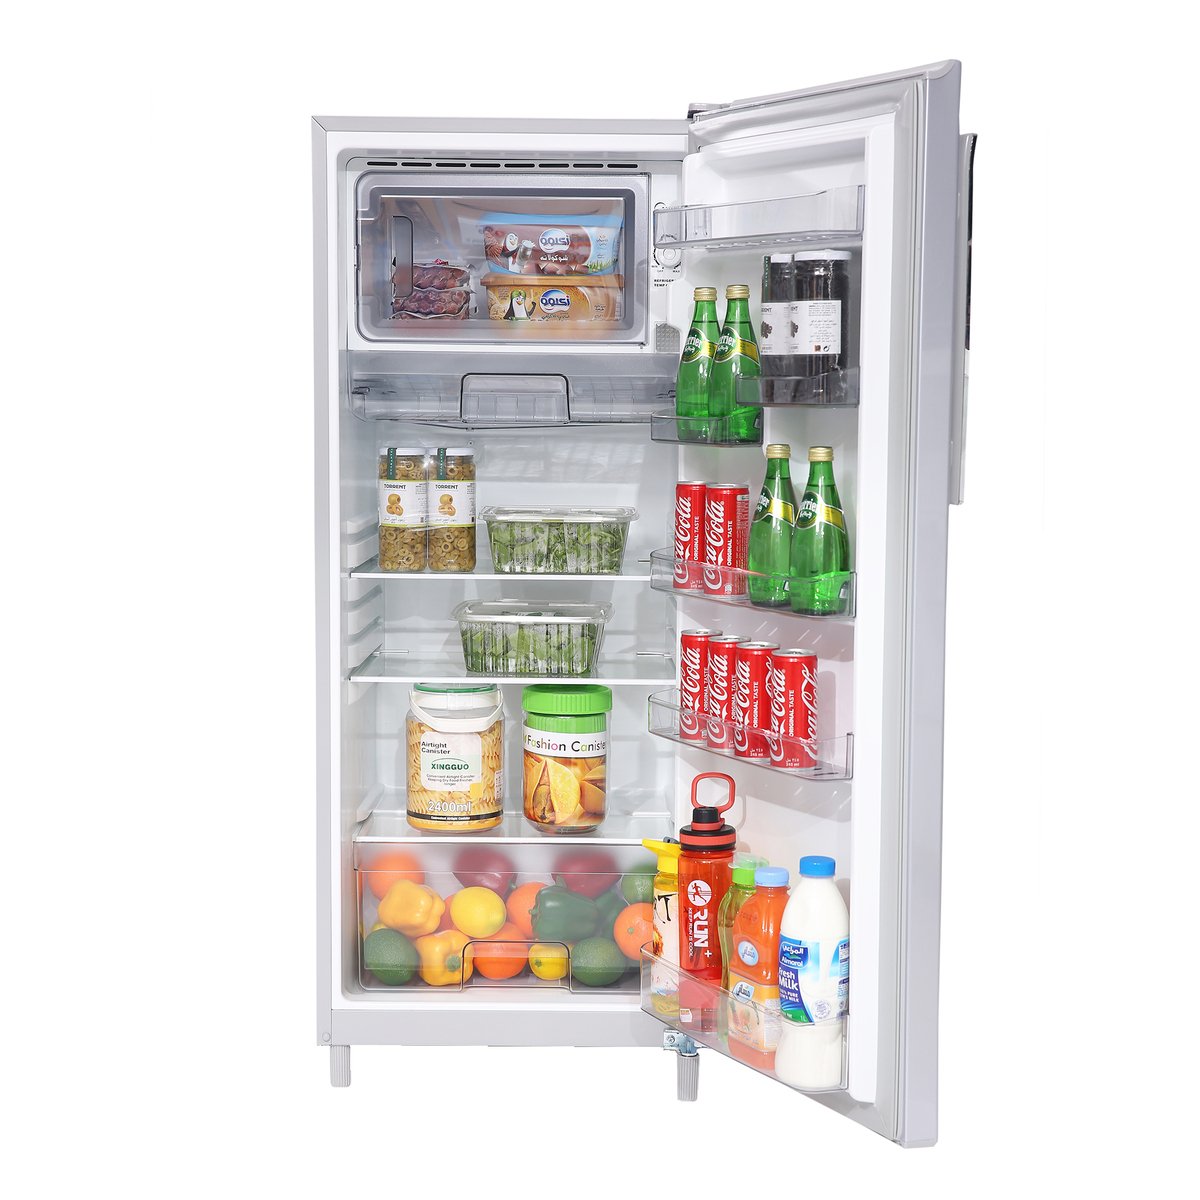 Midea Single Door Refrigerator HS235L 235Ltr